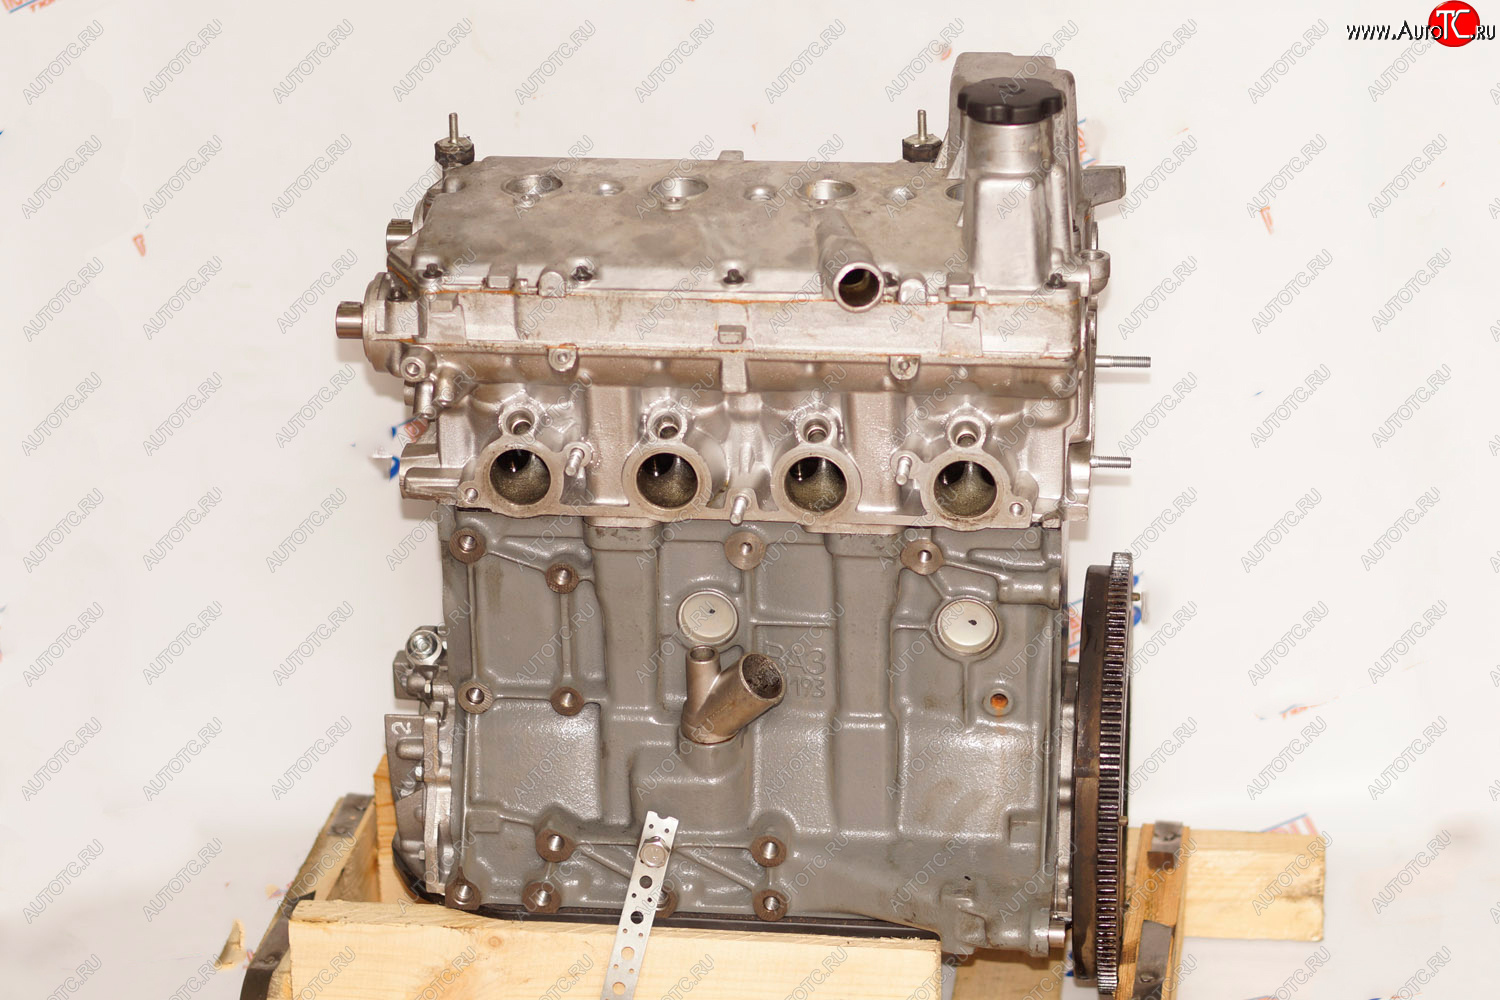 111 999 р. Новый двигатель (агрегат) ТУРБО (16-кл, кованый поршень, масляный насос, без навесного оборудования) Лада Гранта FL 2191 лифтбэк рестайлинг (2018-2024)